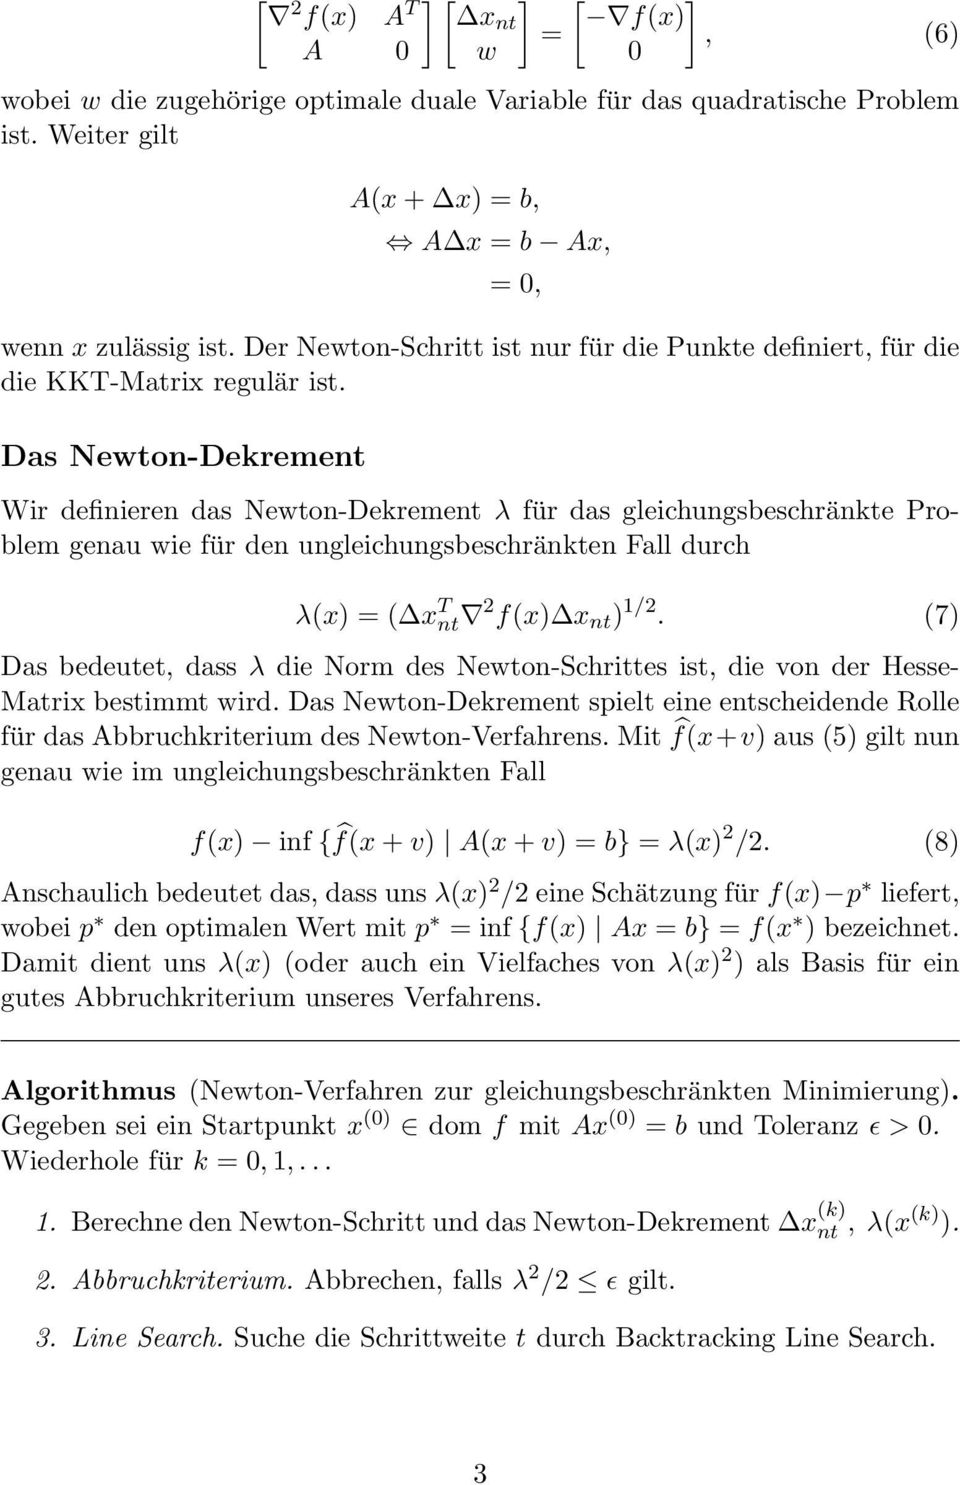 Das Newton-Dekrement Wir definieren das Newton-Dekrement λ für das gleichungsbeschränkte Problem genau wie für den ungleichungsbeschränkten Fall durch λ(x) = ( x T nt 2 f(x) x nt ) 1/2.